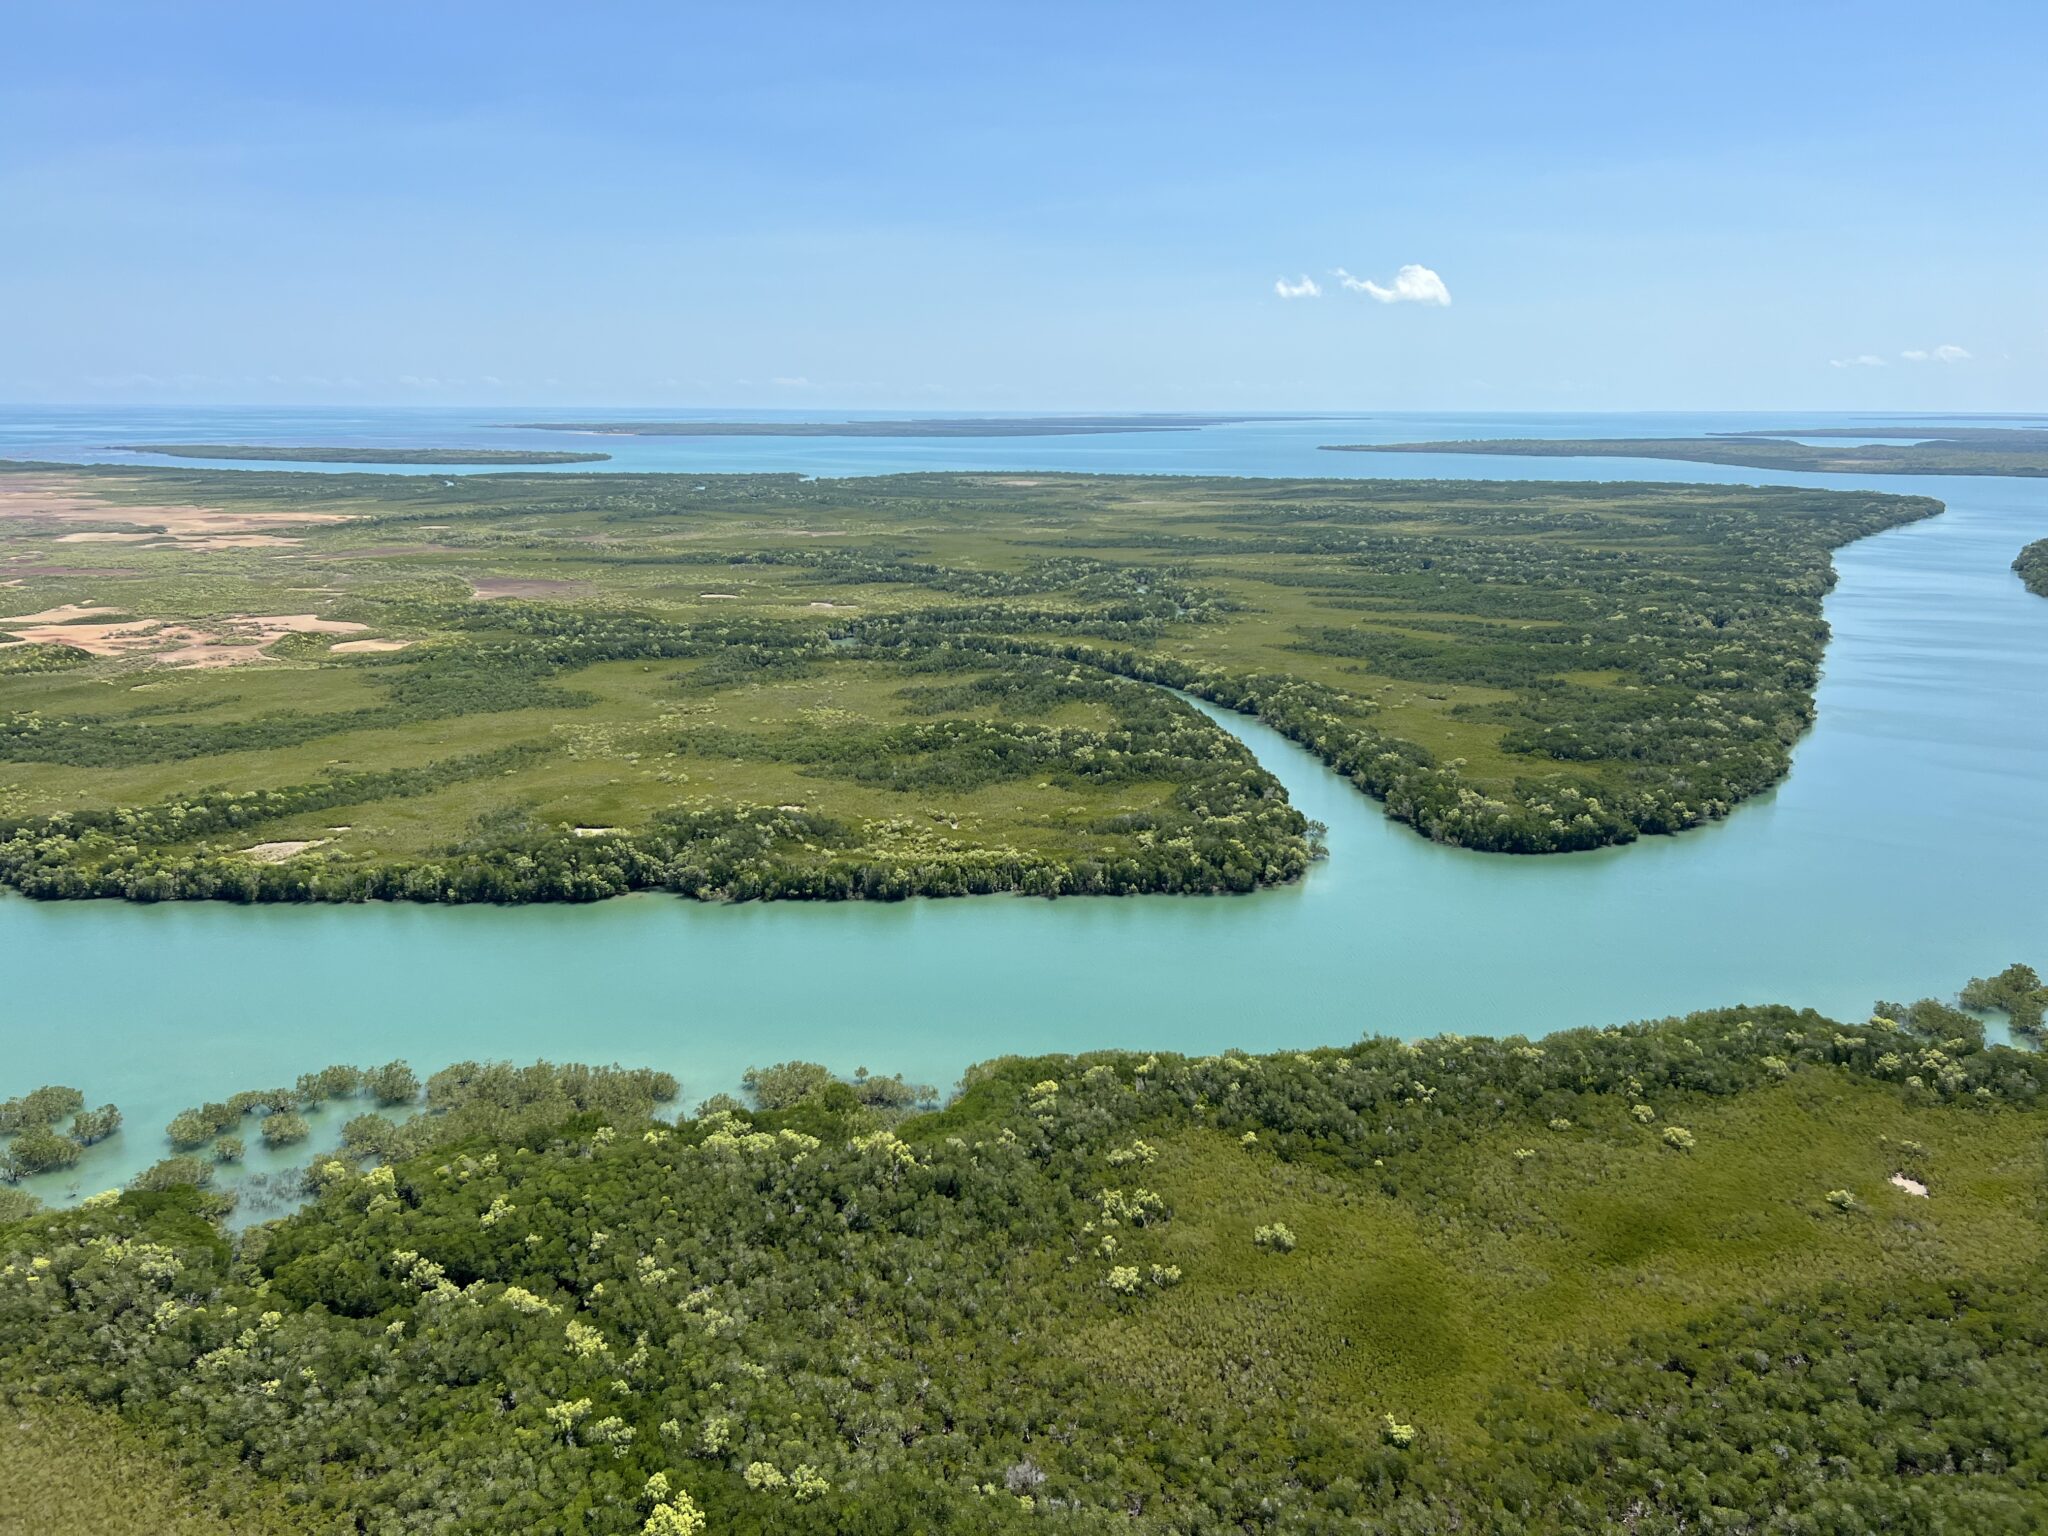 Australien von oben, hellblauer Fluss umringt von saftig grünen Ufern